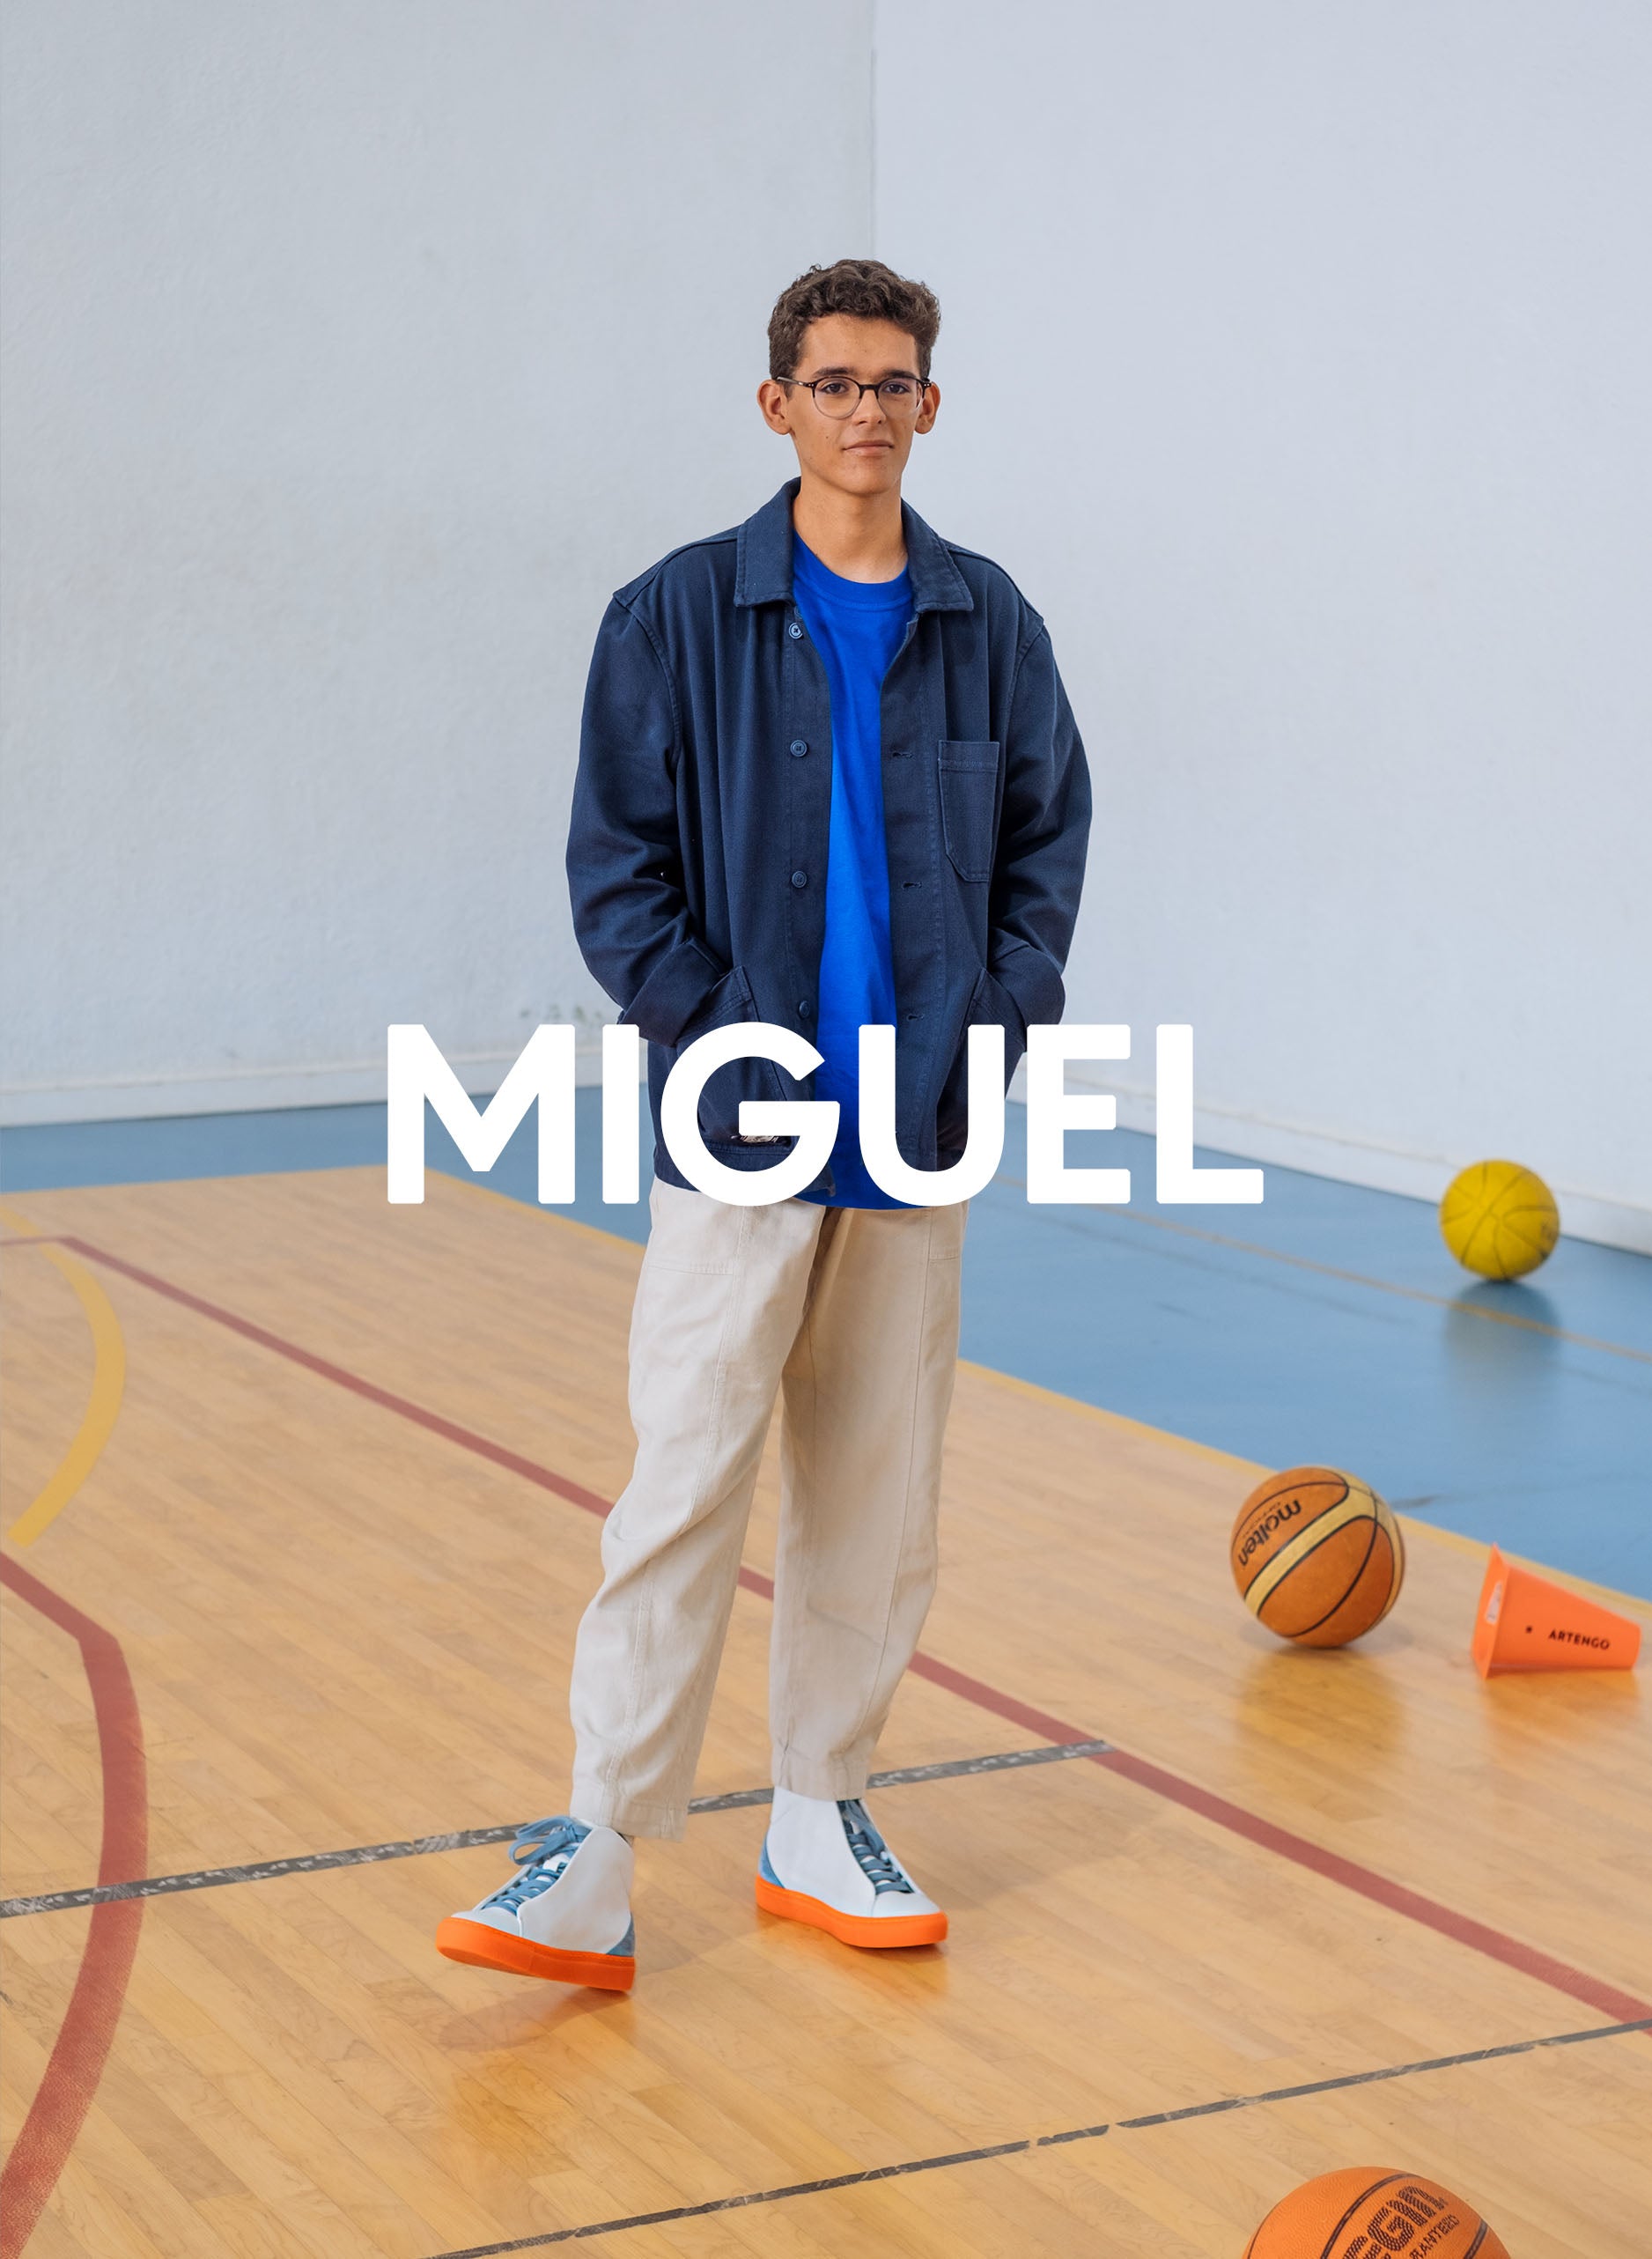 Miguel en un gimnasio con una chaqueta azul, pantalones beige y también diverge sneakers, promoviendo el impacto social y el calzado personalizado a través del proyecto Imagine.